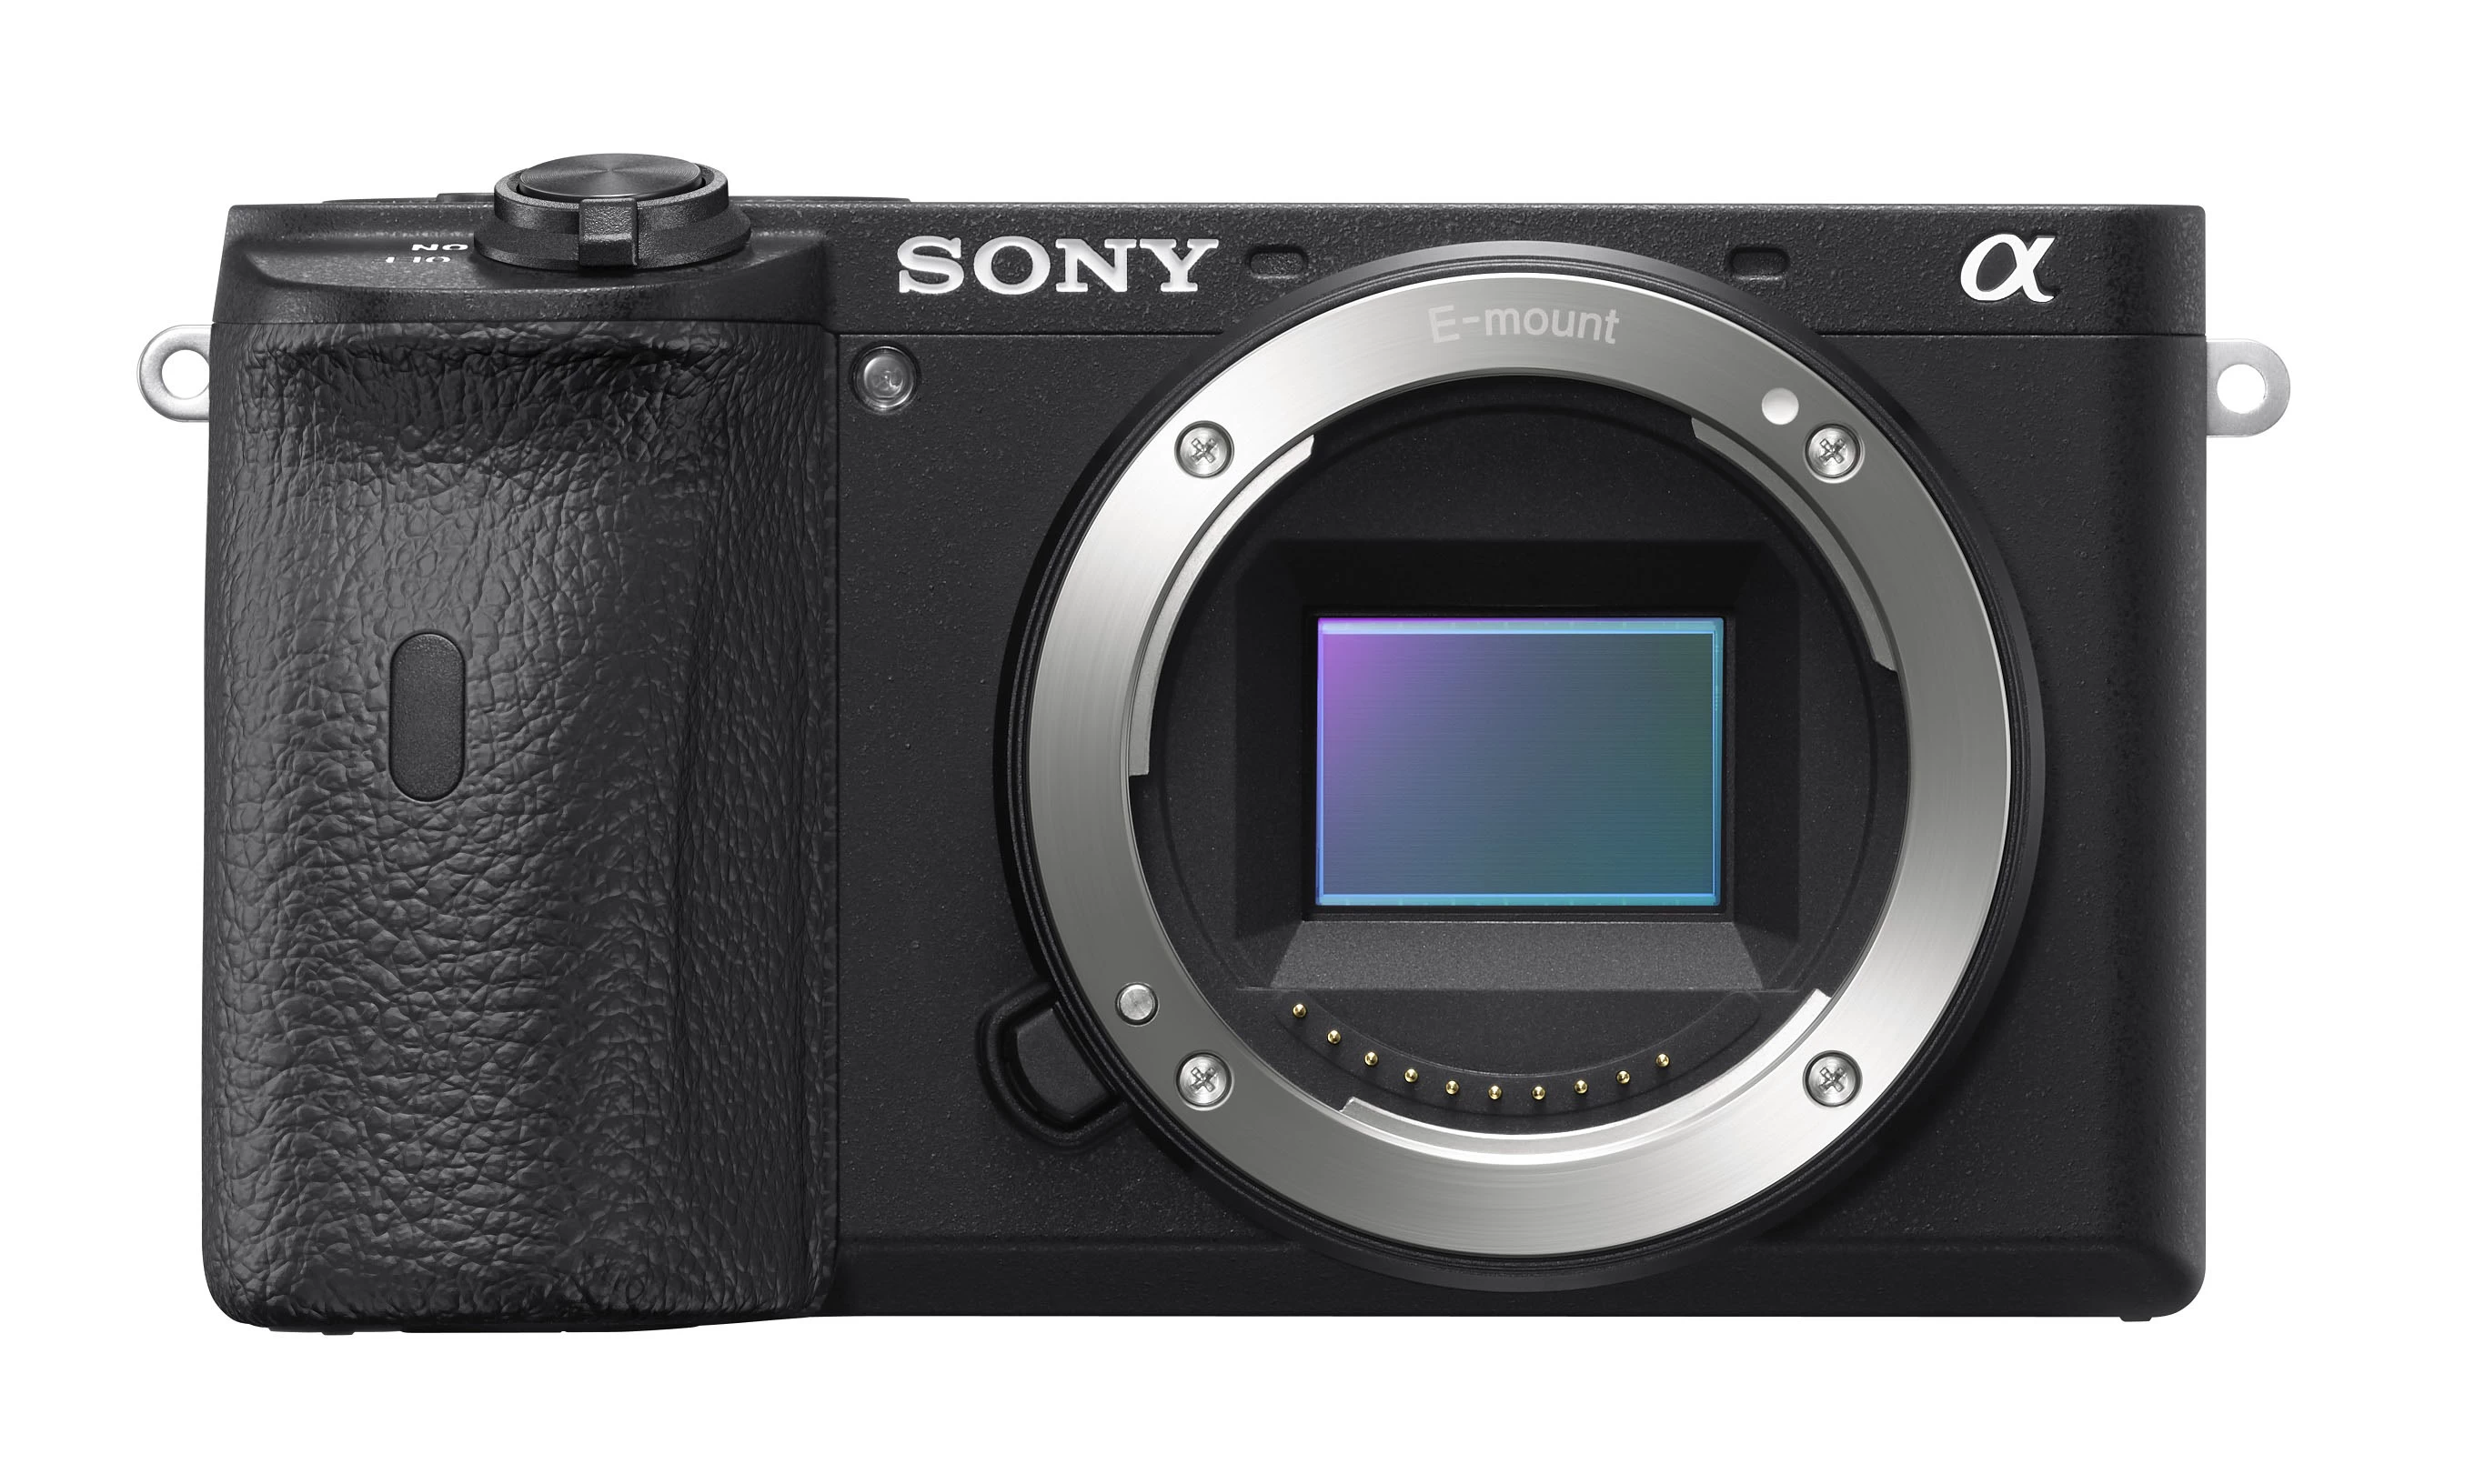 Pic Sony A6600 02 Copy | a6100 | โซนี่ไทย ส่งกล้องมิเรอร์เลส 2 รุ่นใหม่ a6600 และ a6100